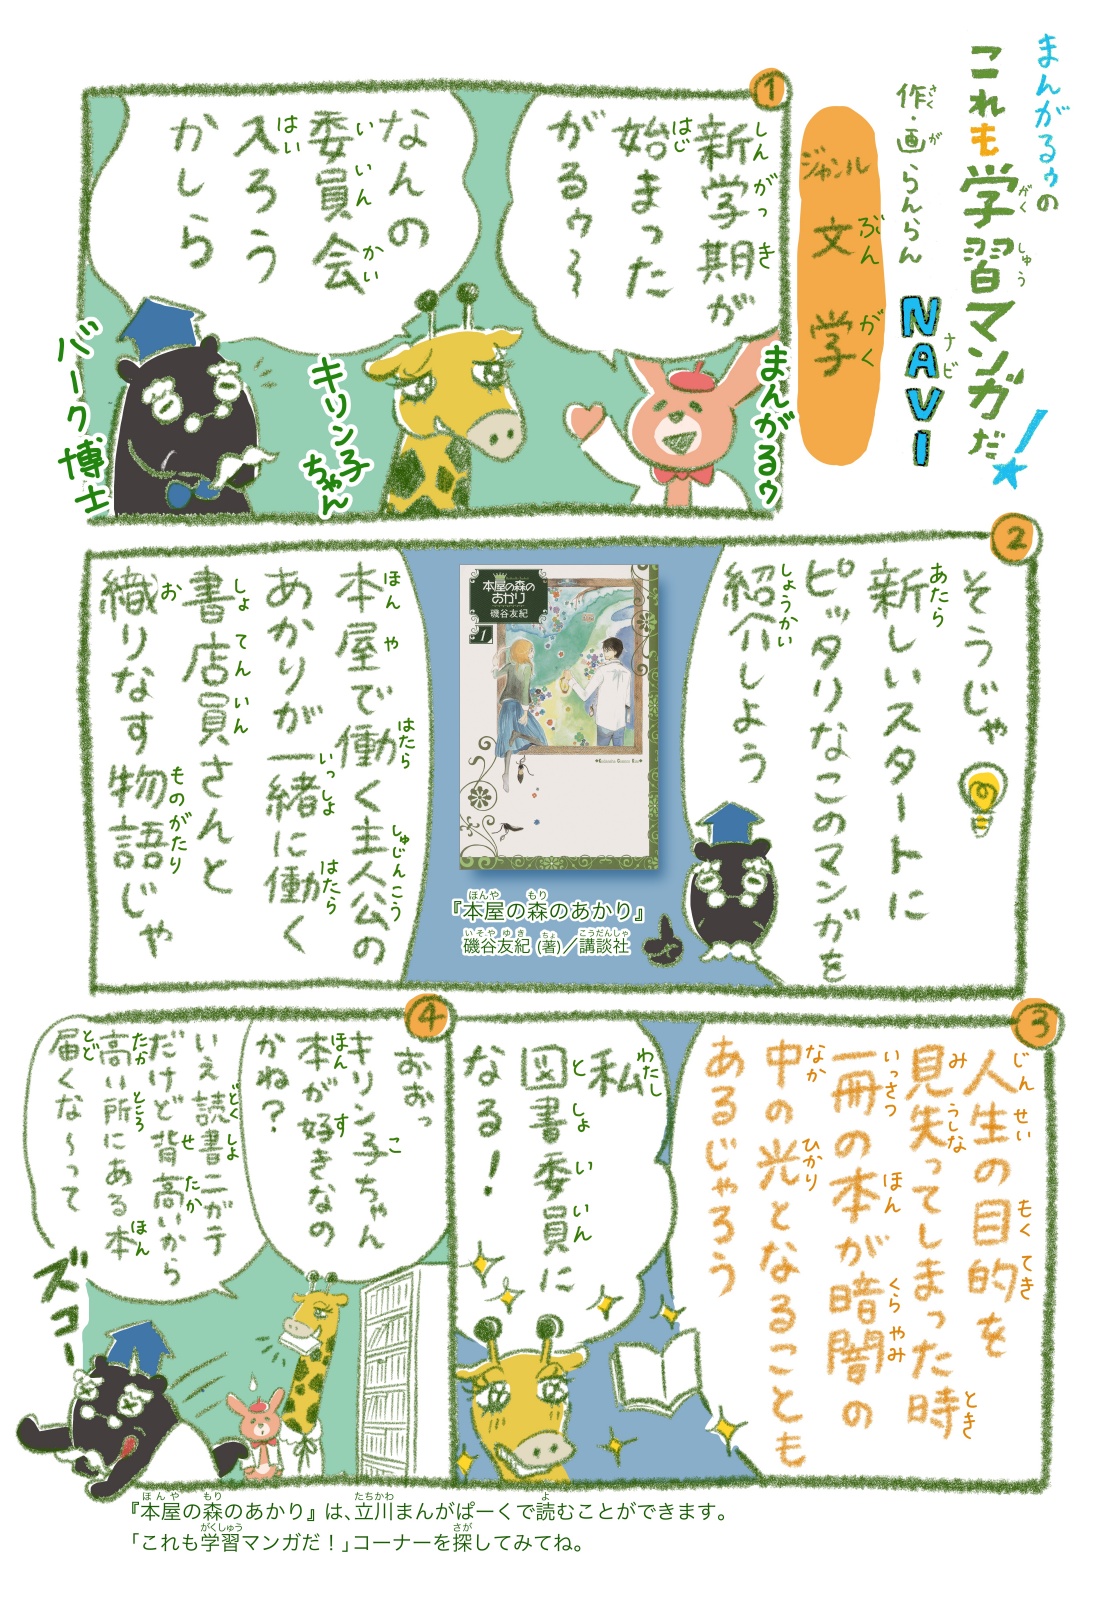 https://mangapark.jp/topics/2024/03/23/images/mangaroo_vol054_web.jpg